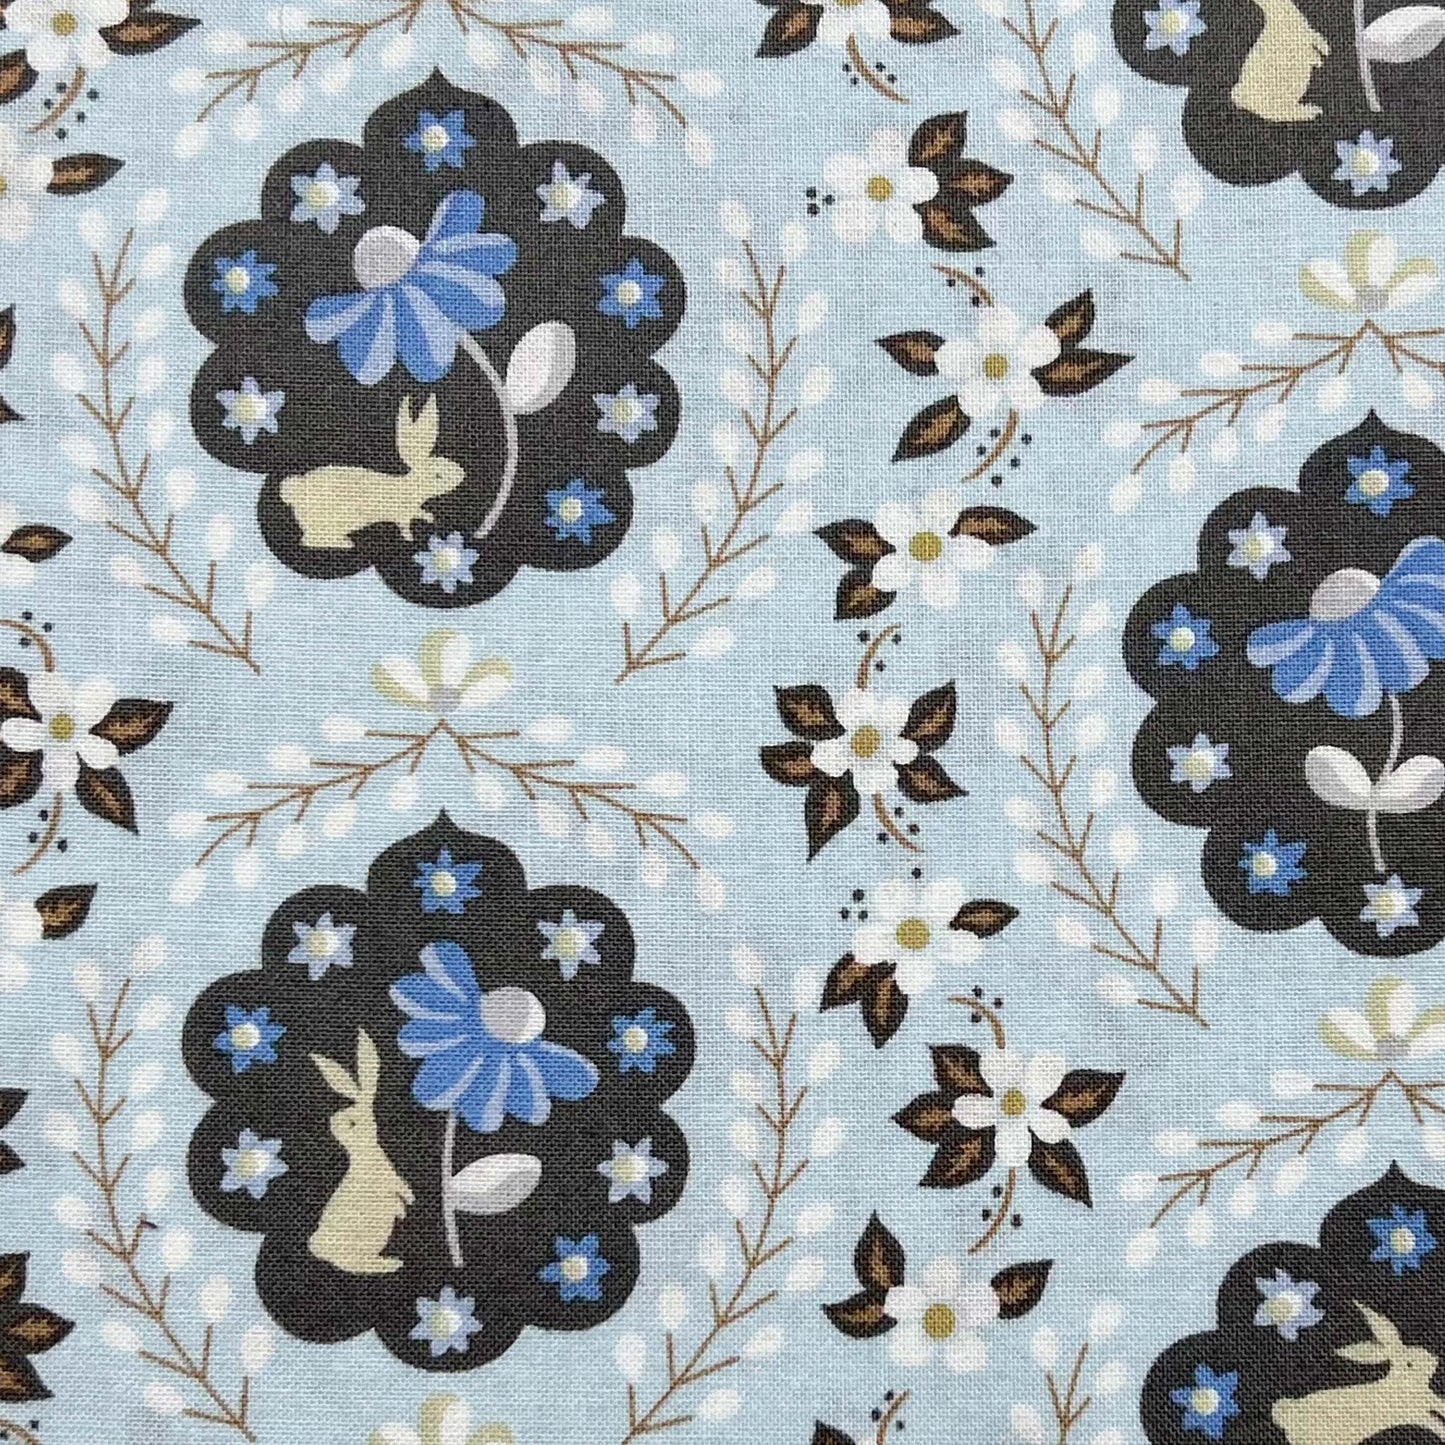 Tessuto a fantasia con coniglietti e fiori su sfondo azzurro